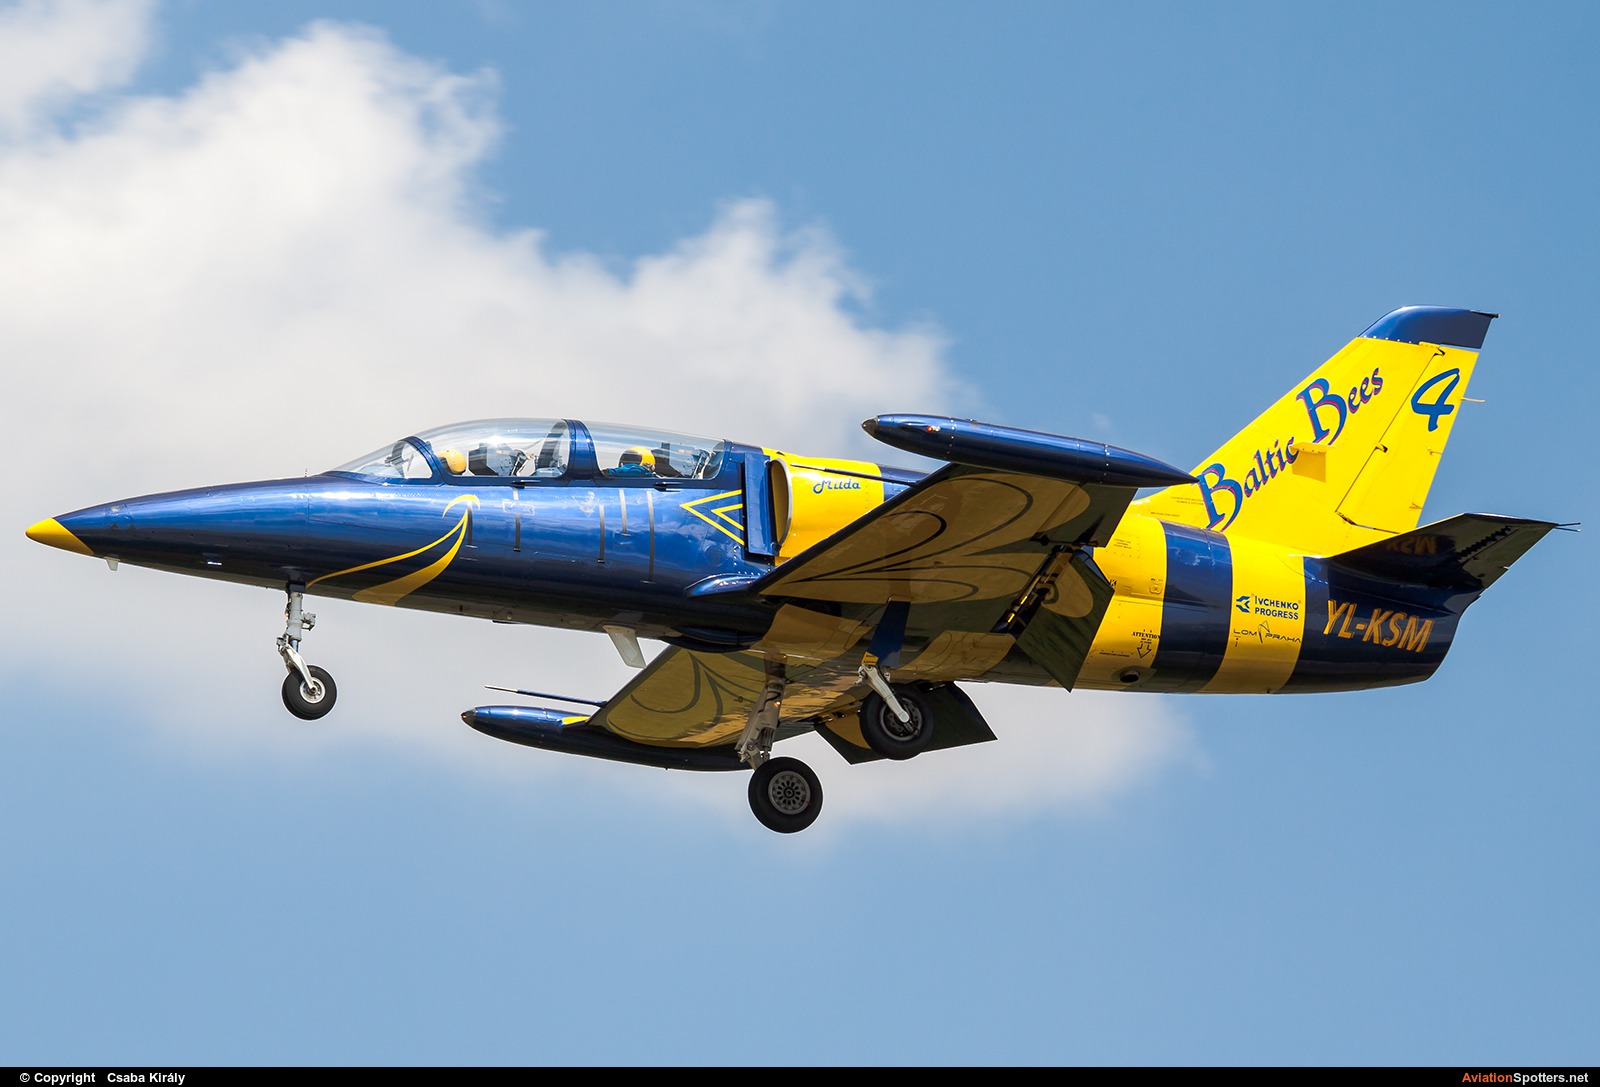 Baltic Bees Jet Team  -  L-39C Albatros  (YL-KSM) By Csaba Király (Csaba Kiraly)